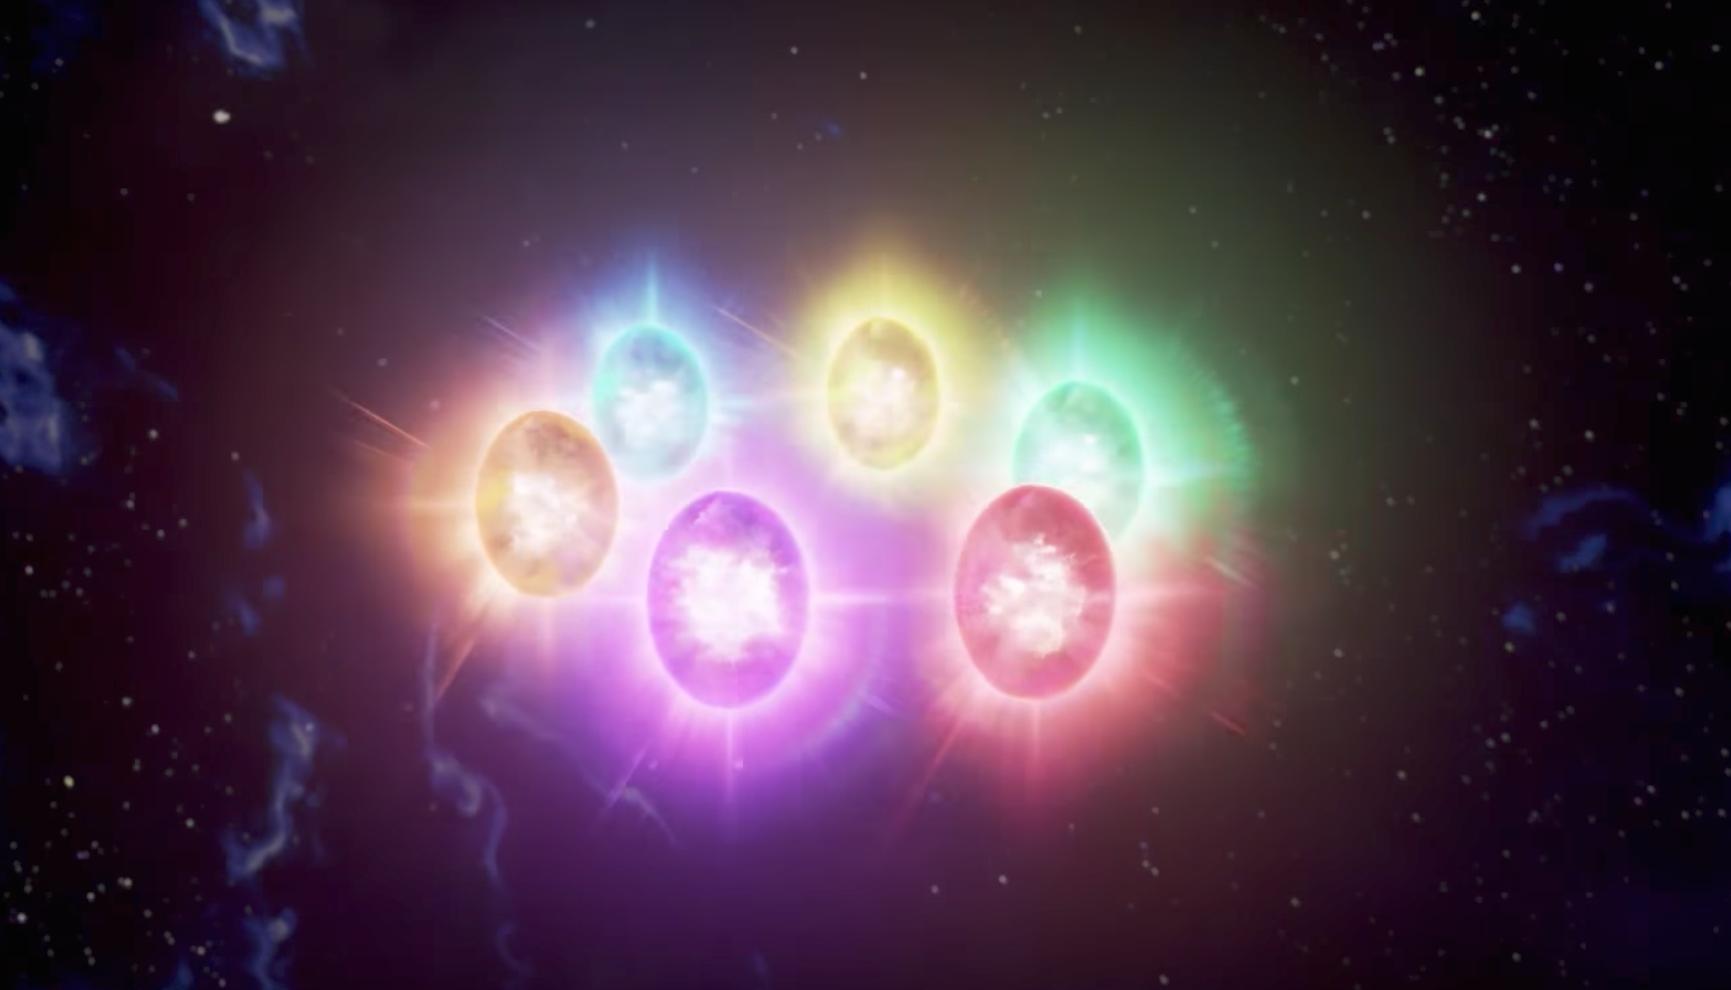 infinity stones powers